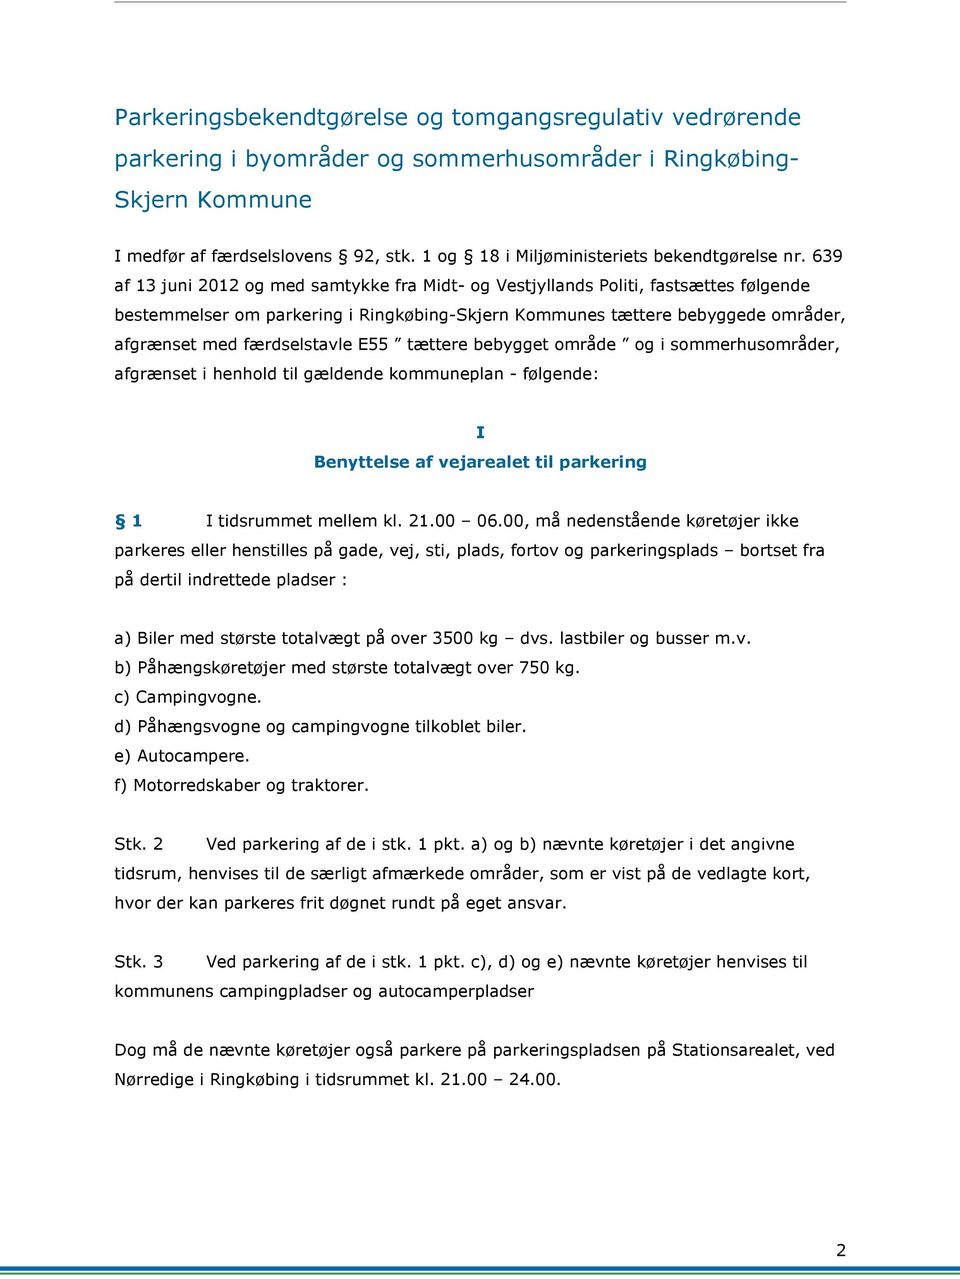 639 af 13 juni 2012 og med samtykke fra Midt- og Vestjyllands Politi, fastsættes følgende bestemmelser om parkering i Ringkøbing-Skjern Kommunes tættere bebyggede områder, afgrænset med færdselstavle